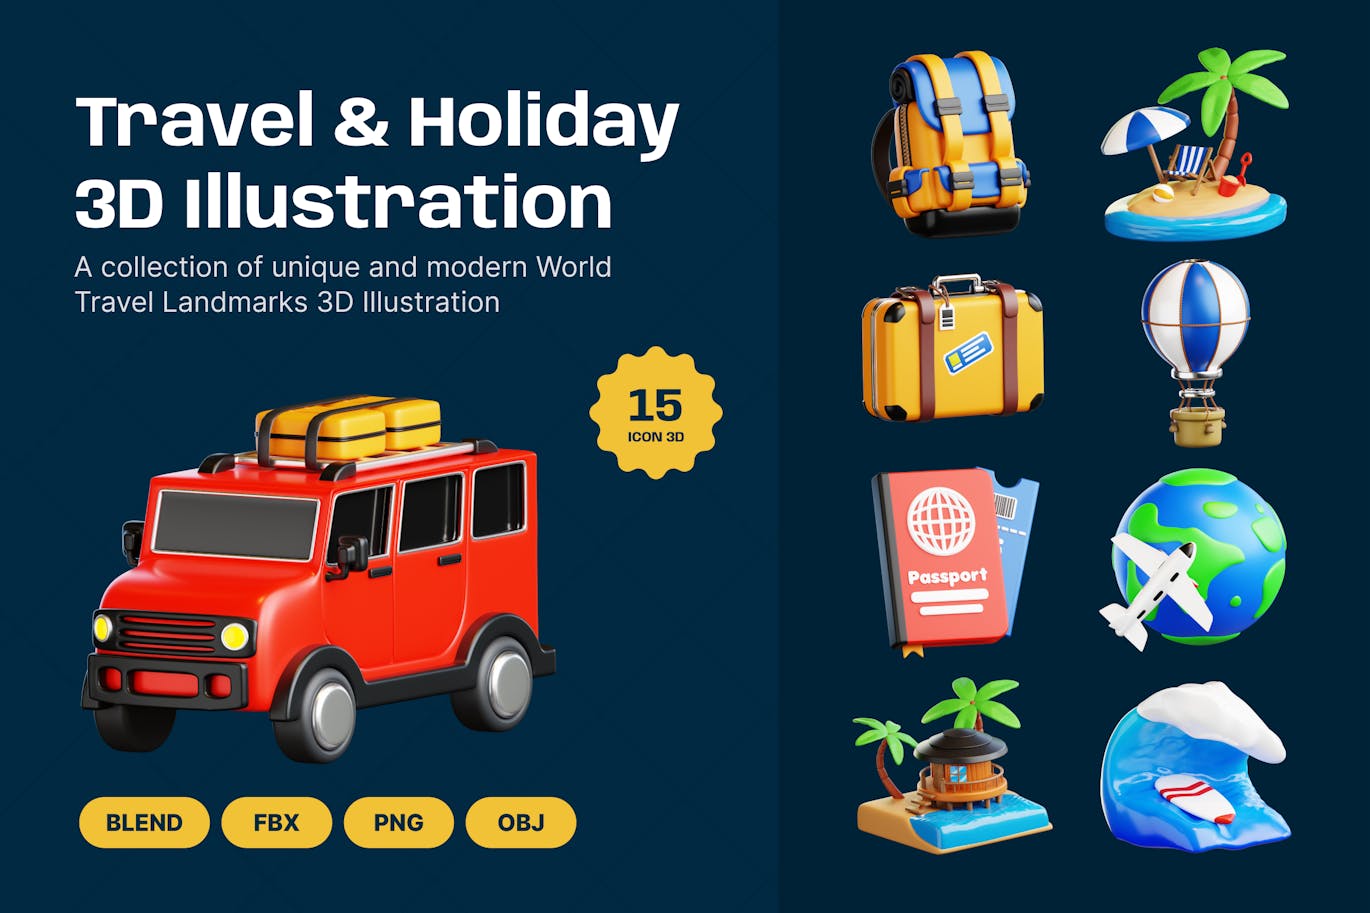 旅行和度假 3D 插图 (PNG,obj,blend,fbx)